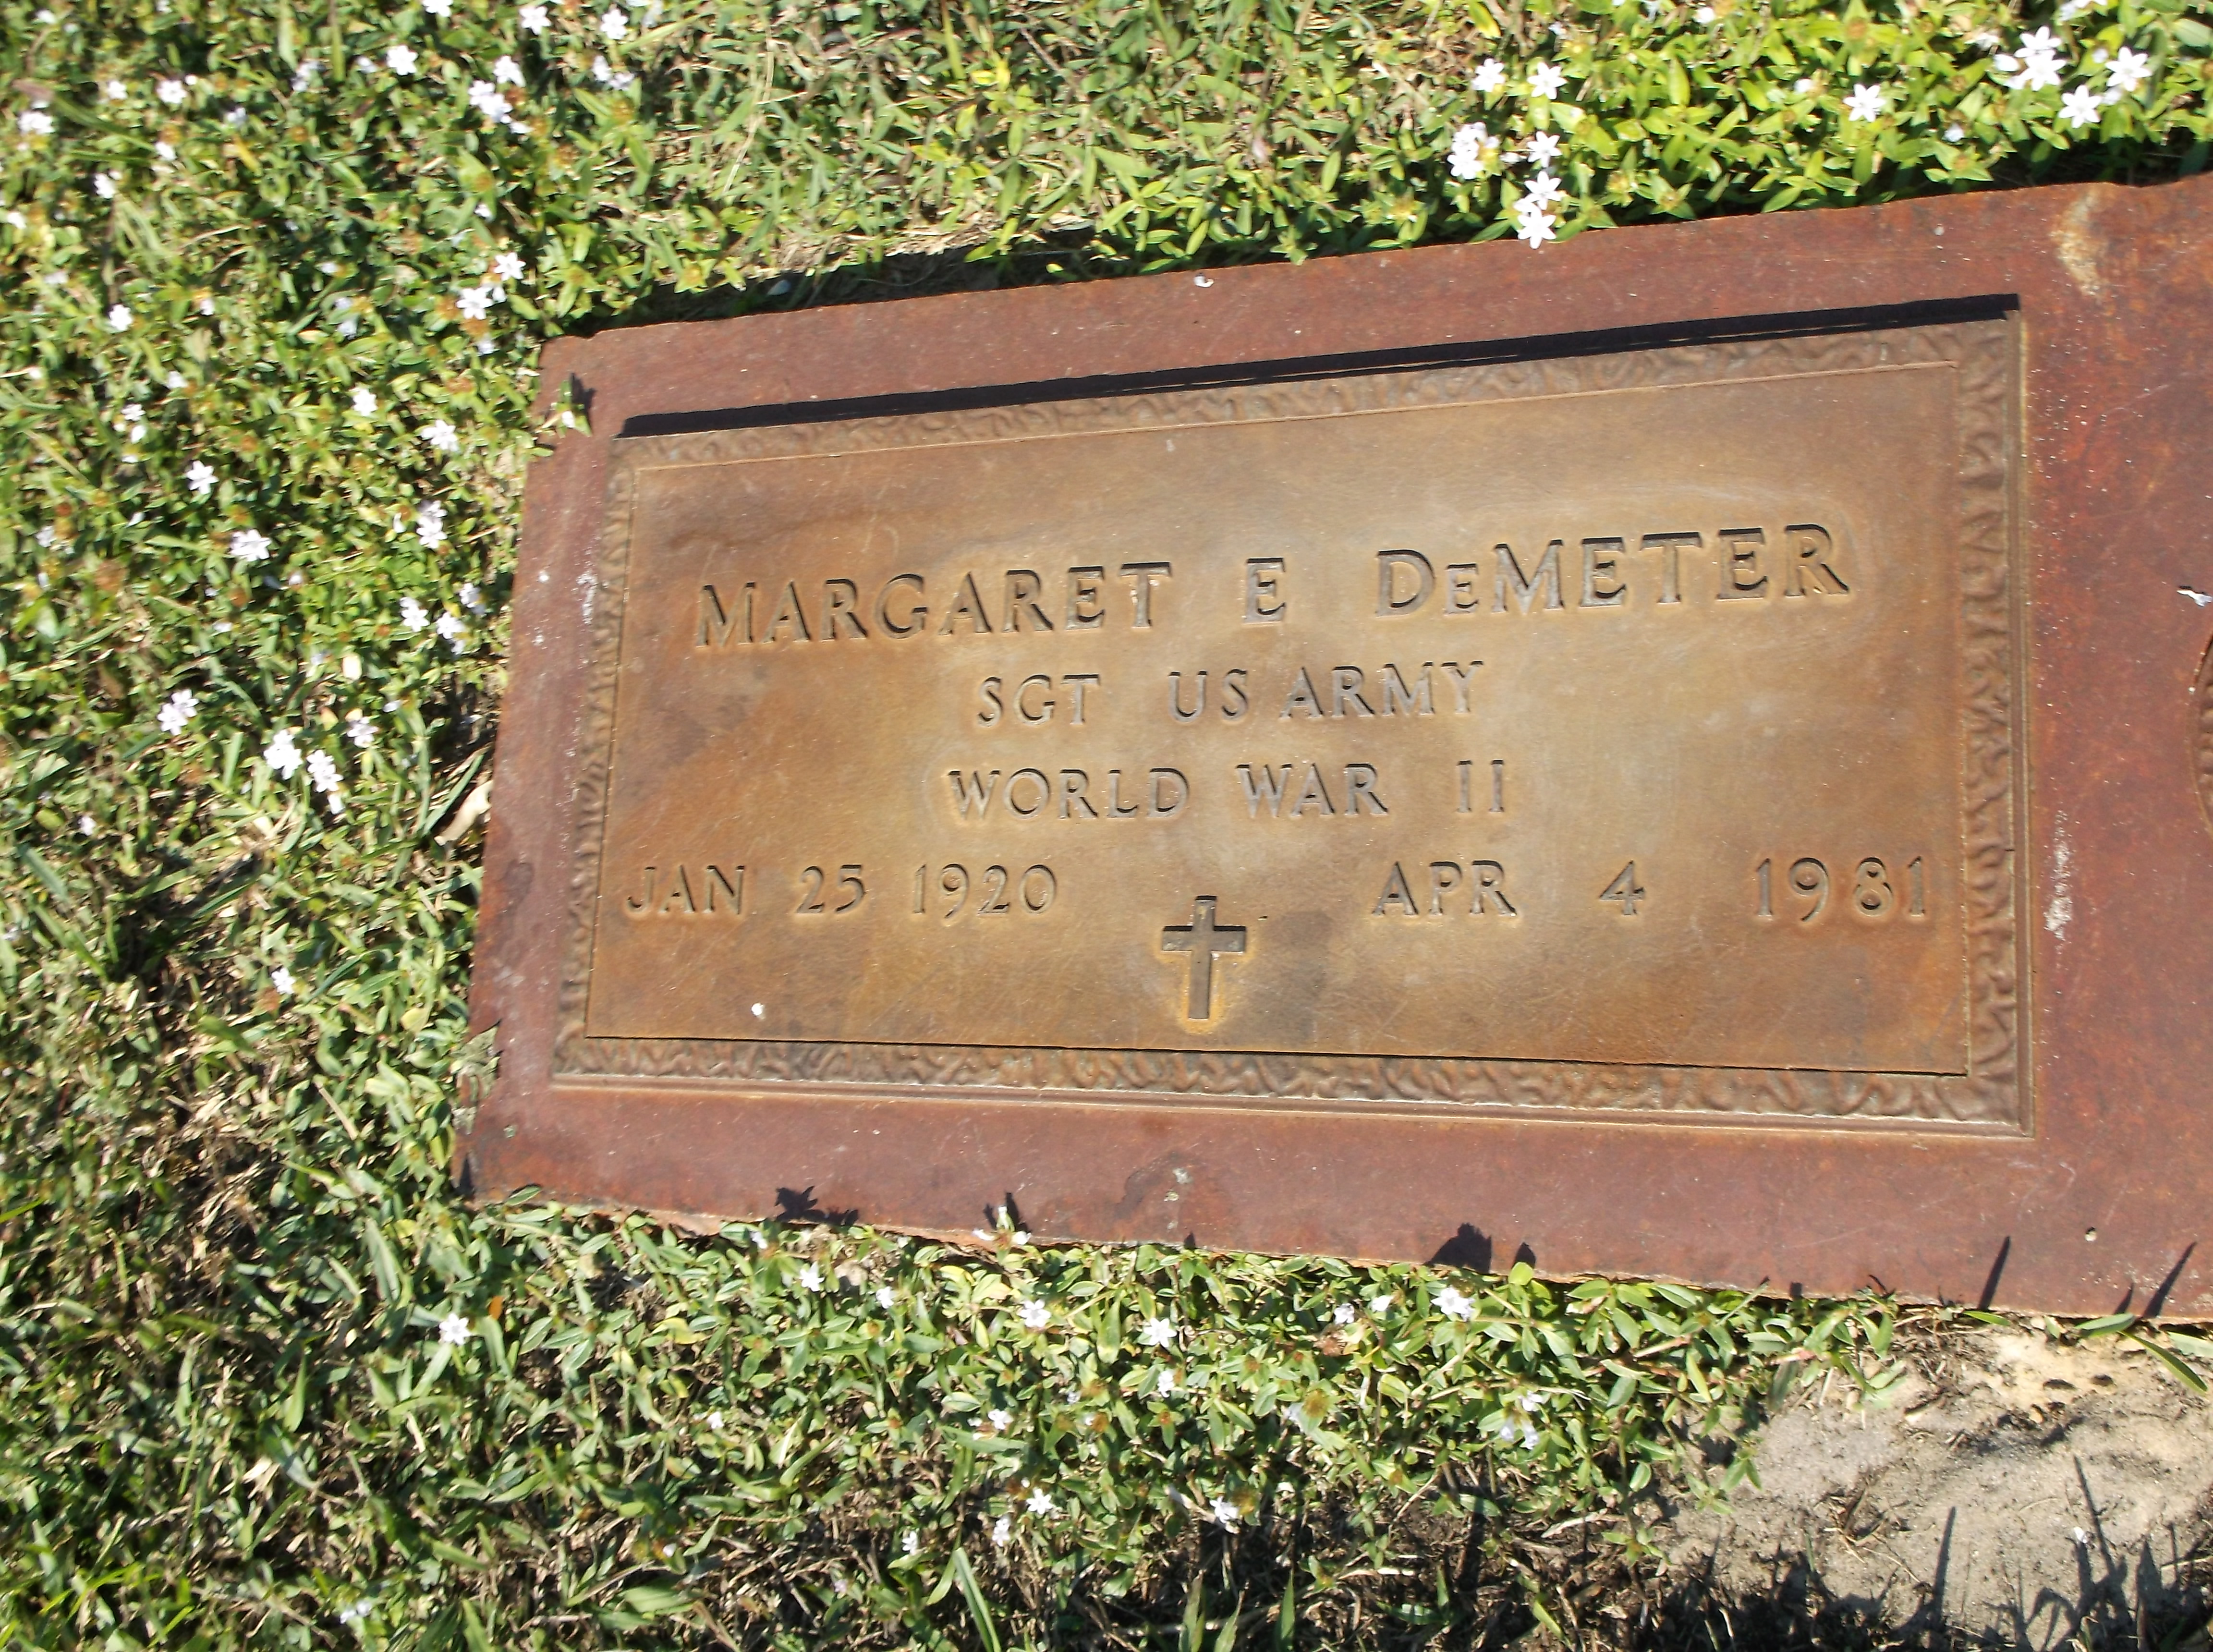 Margaret E DeMeter